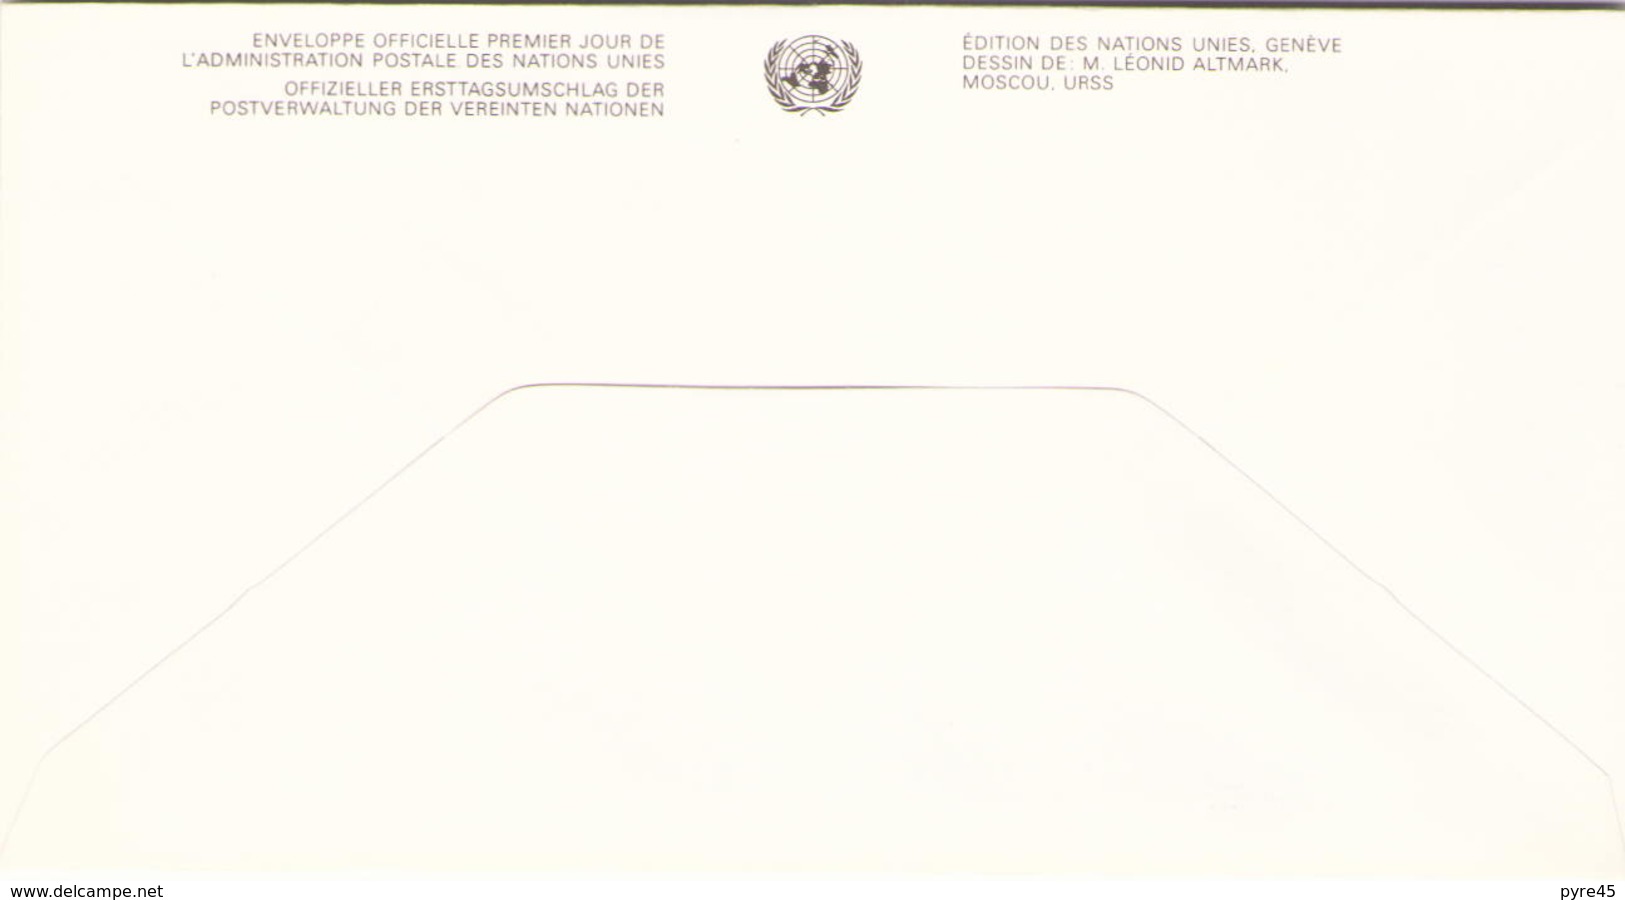 NATIONS UNIES FDC DU 20 NOVEMBRE 1991 NEW YORK SERIE DES DROITS DE L HOMME - Lettres & Documents